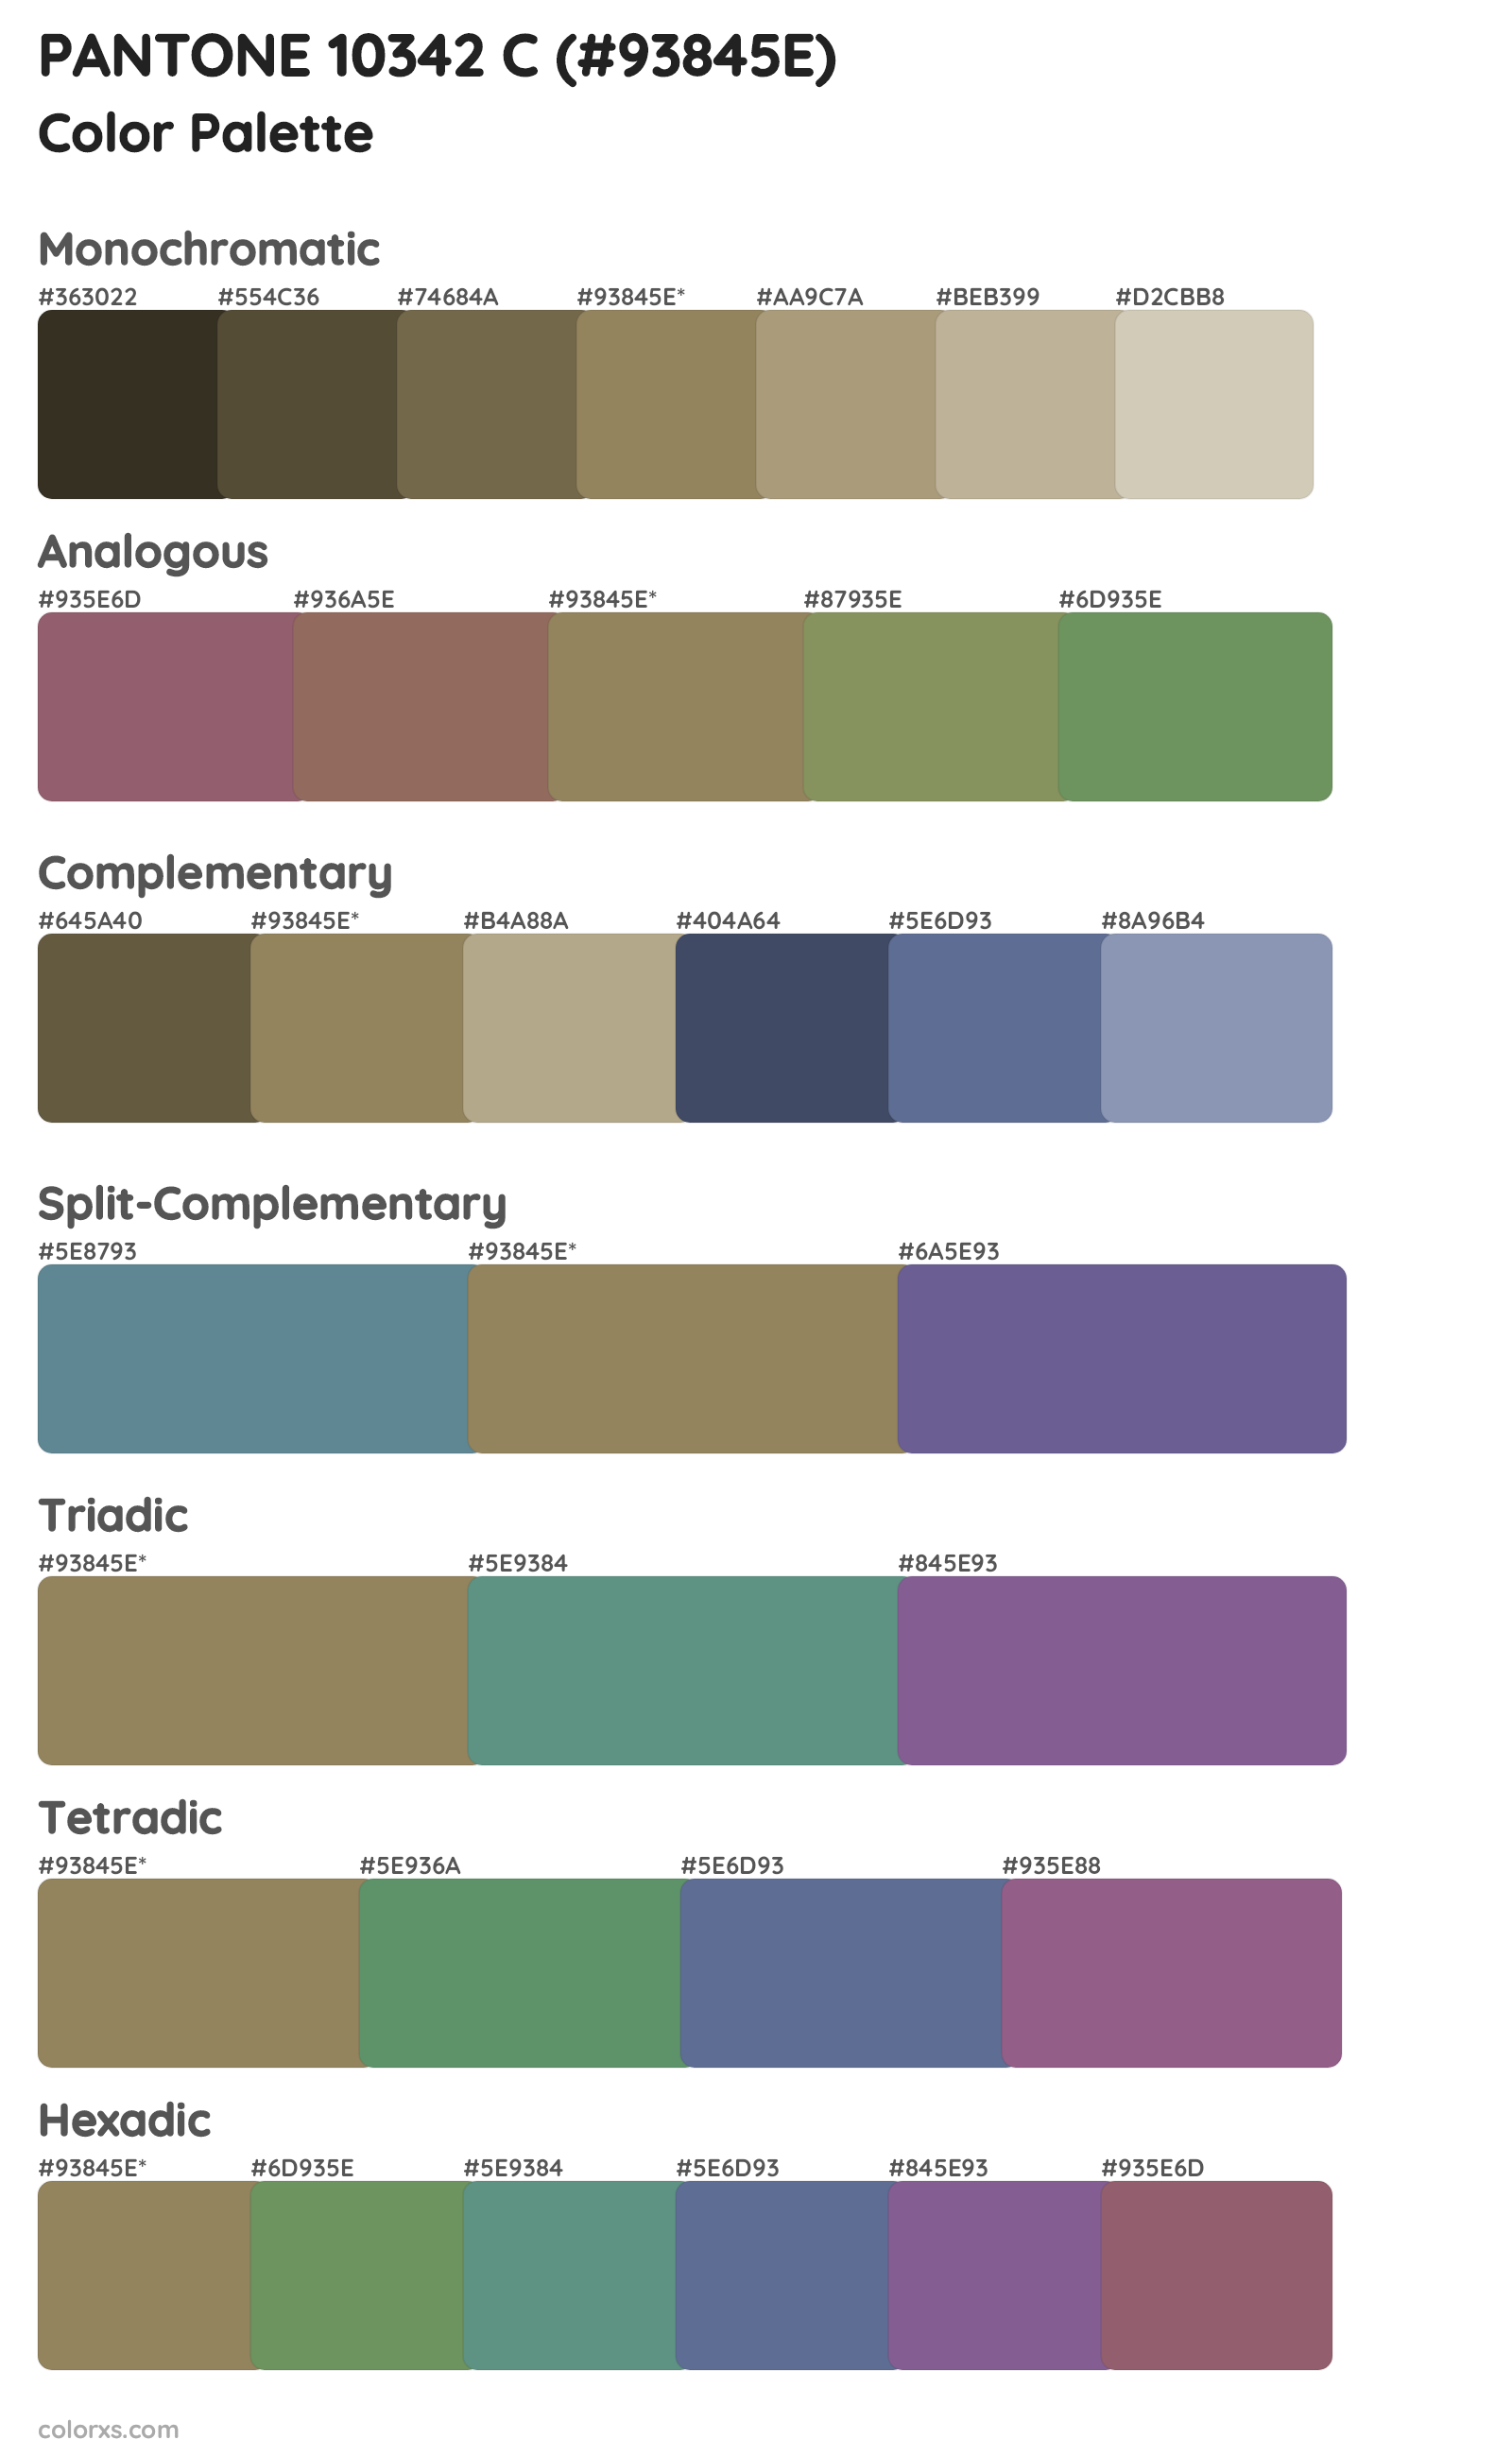 PANTONE 10342 C Color Scheme Palettes